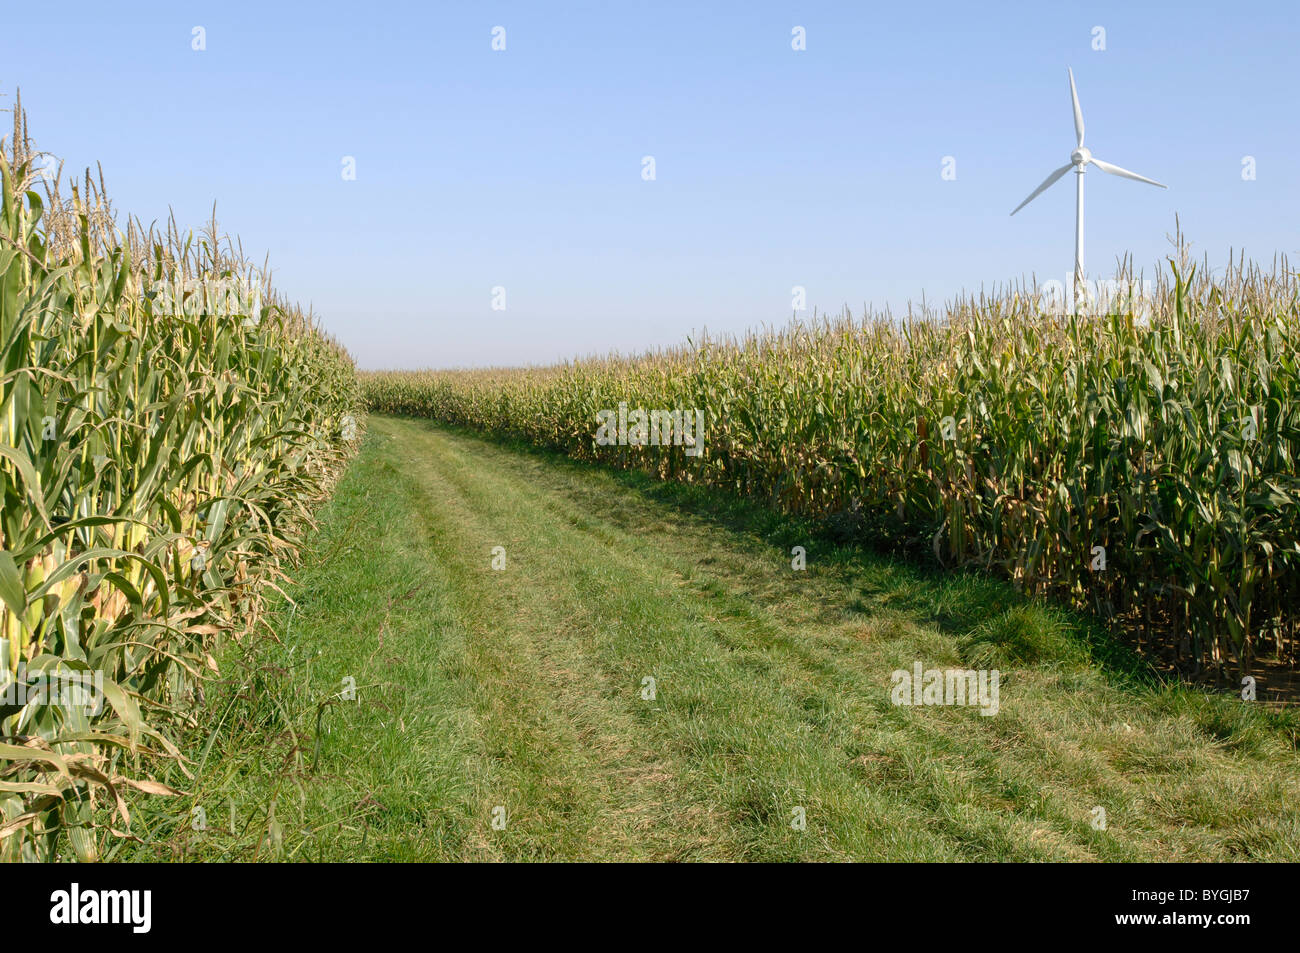 El maíz, el maíz (Zea mays). Campo con turbina de viento de fondo. Foto de stock